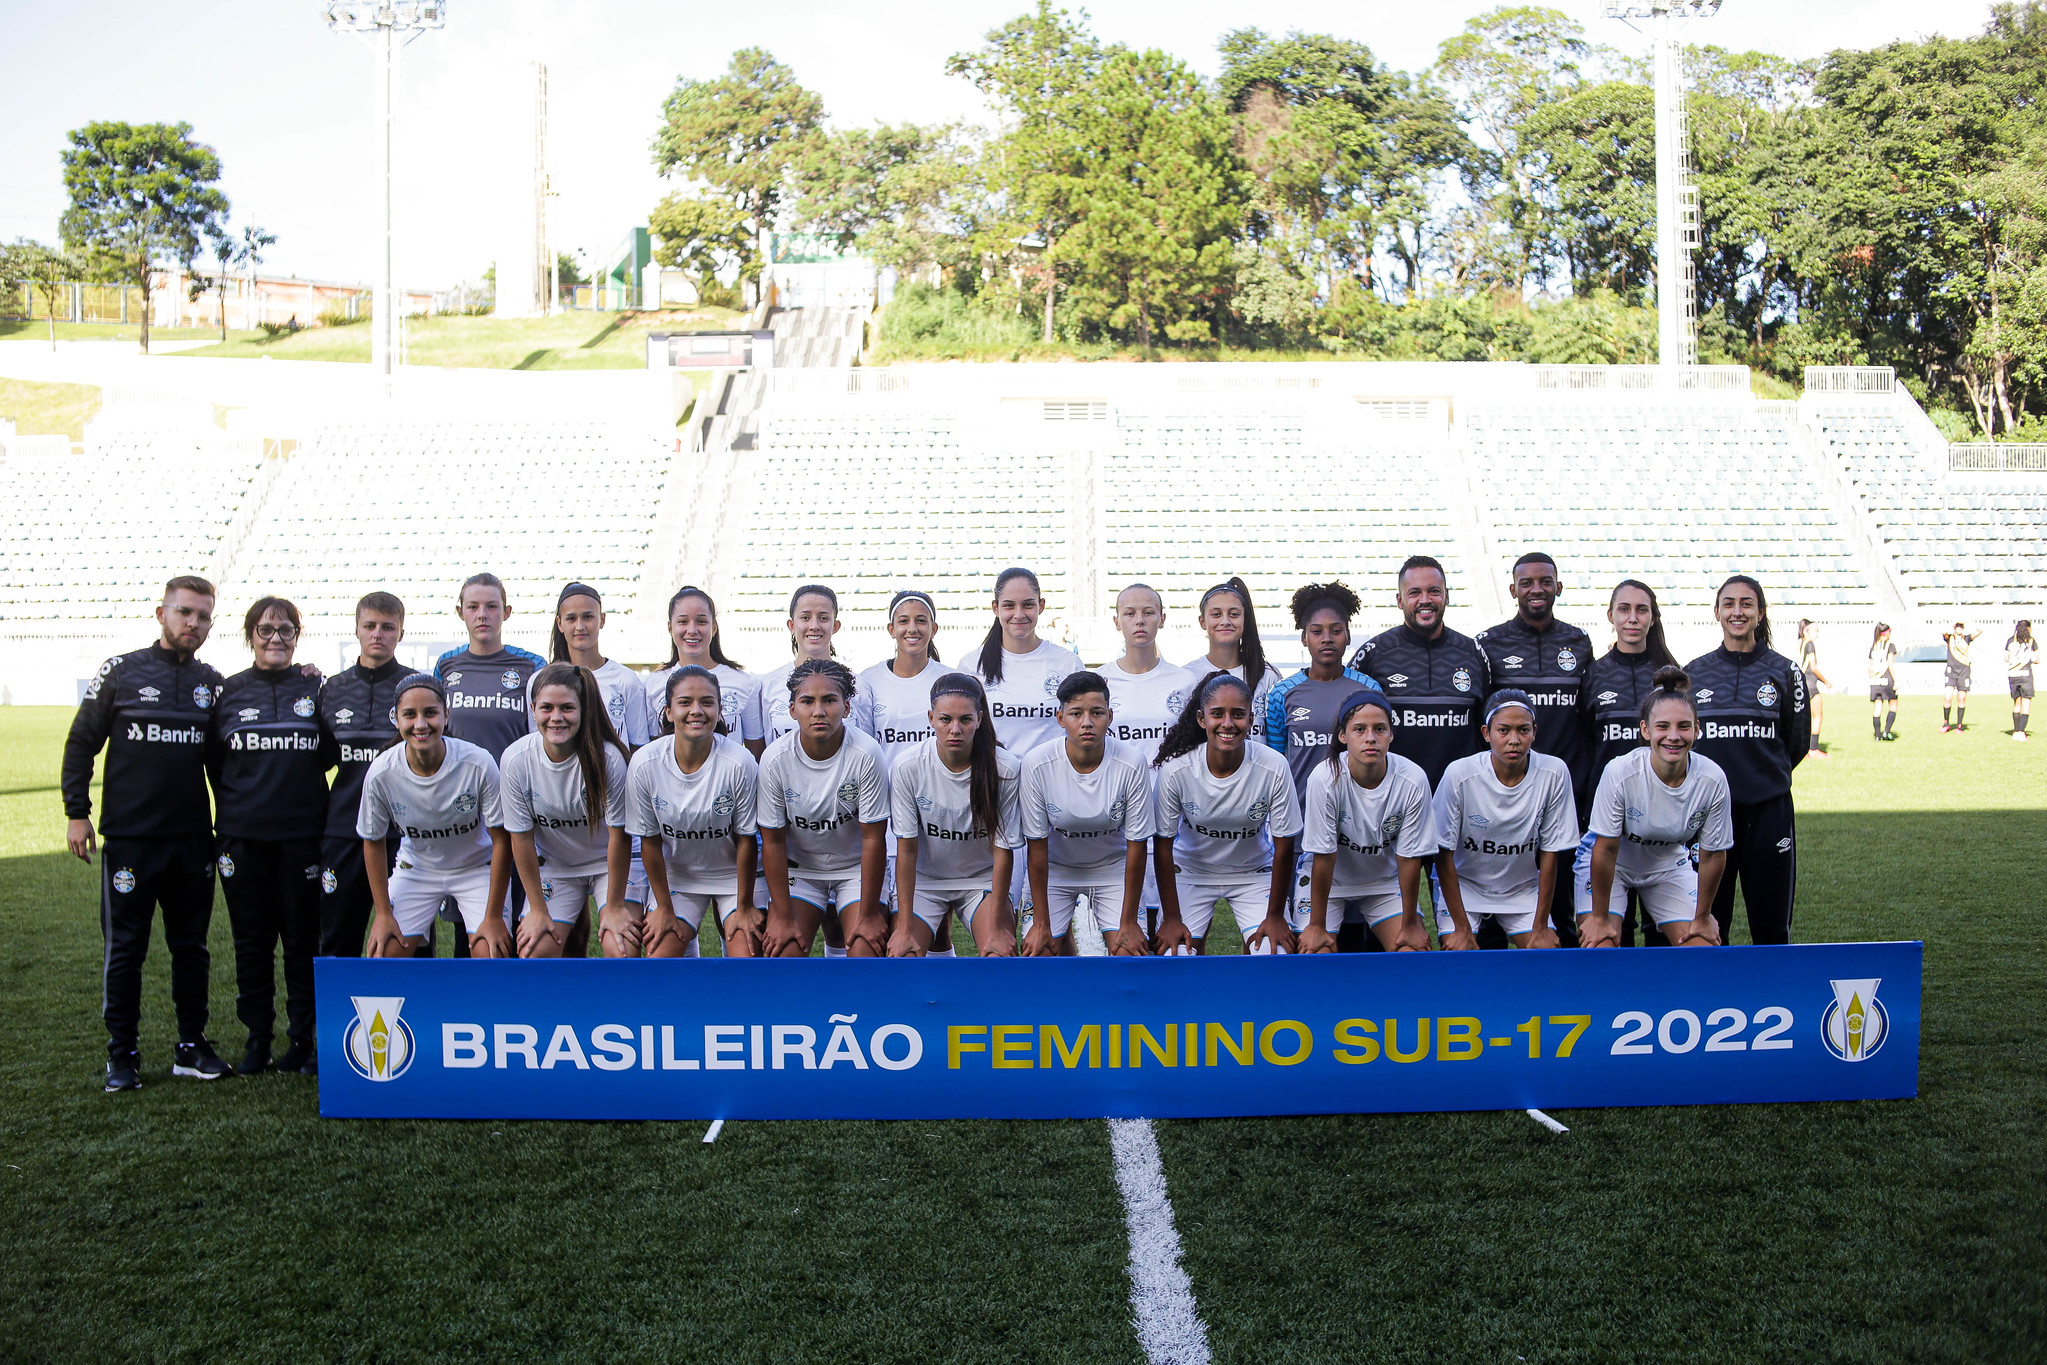 SEMI FINAL - CAMPEONATO BRASILEIRO FEMININO 2022